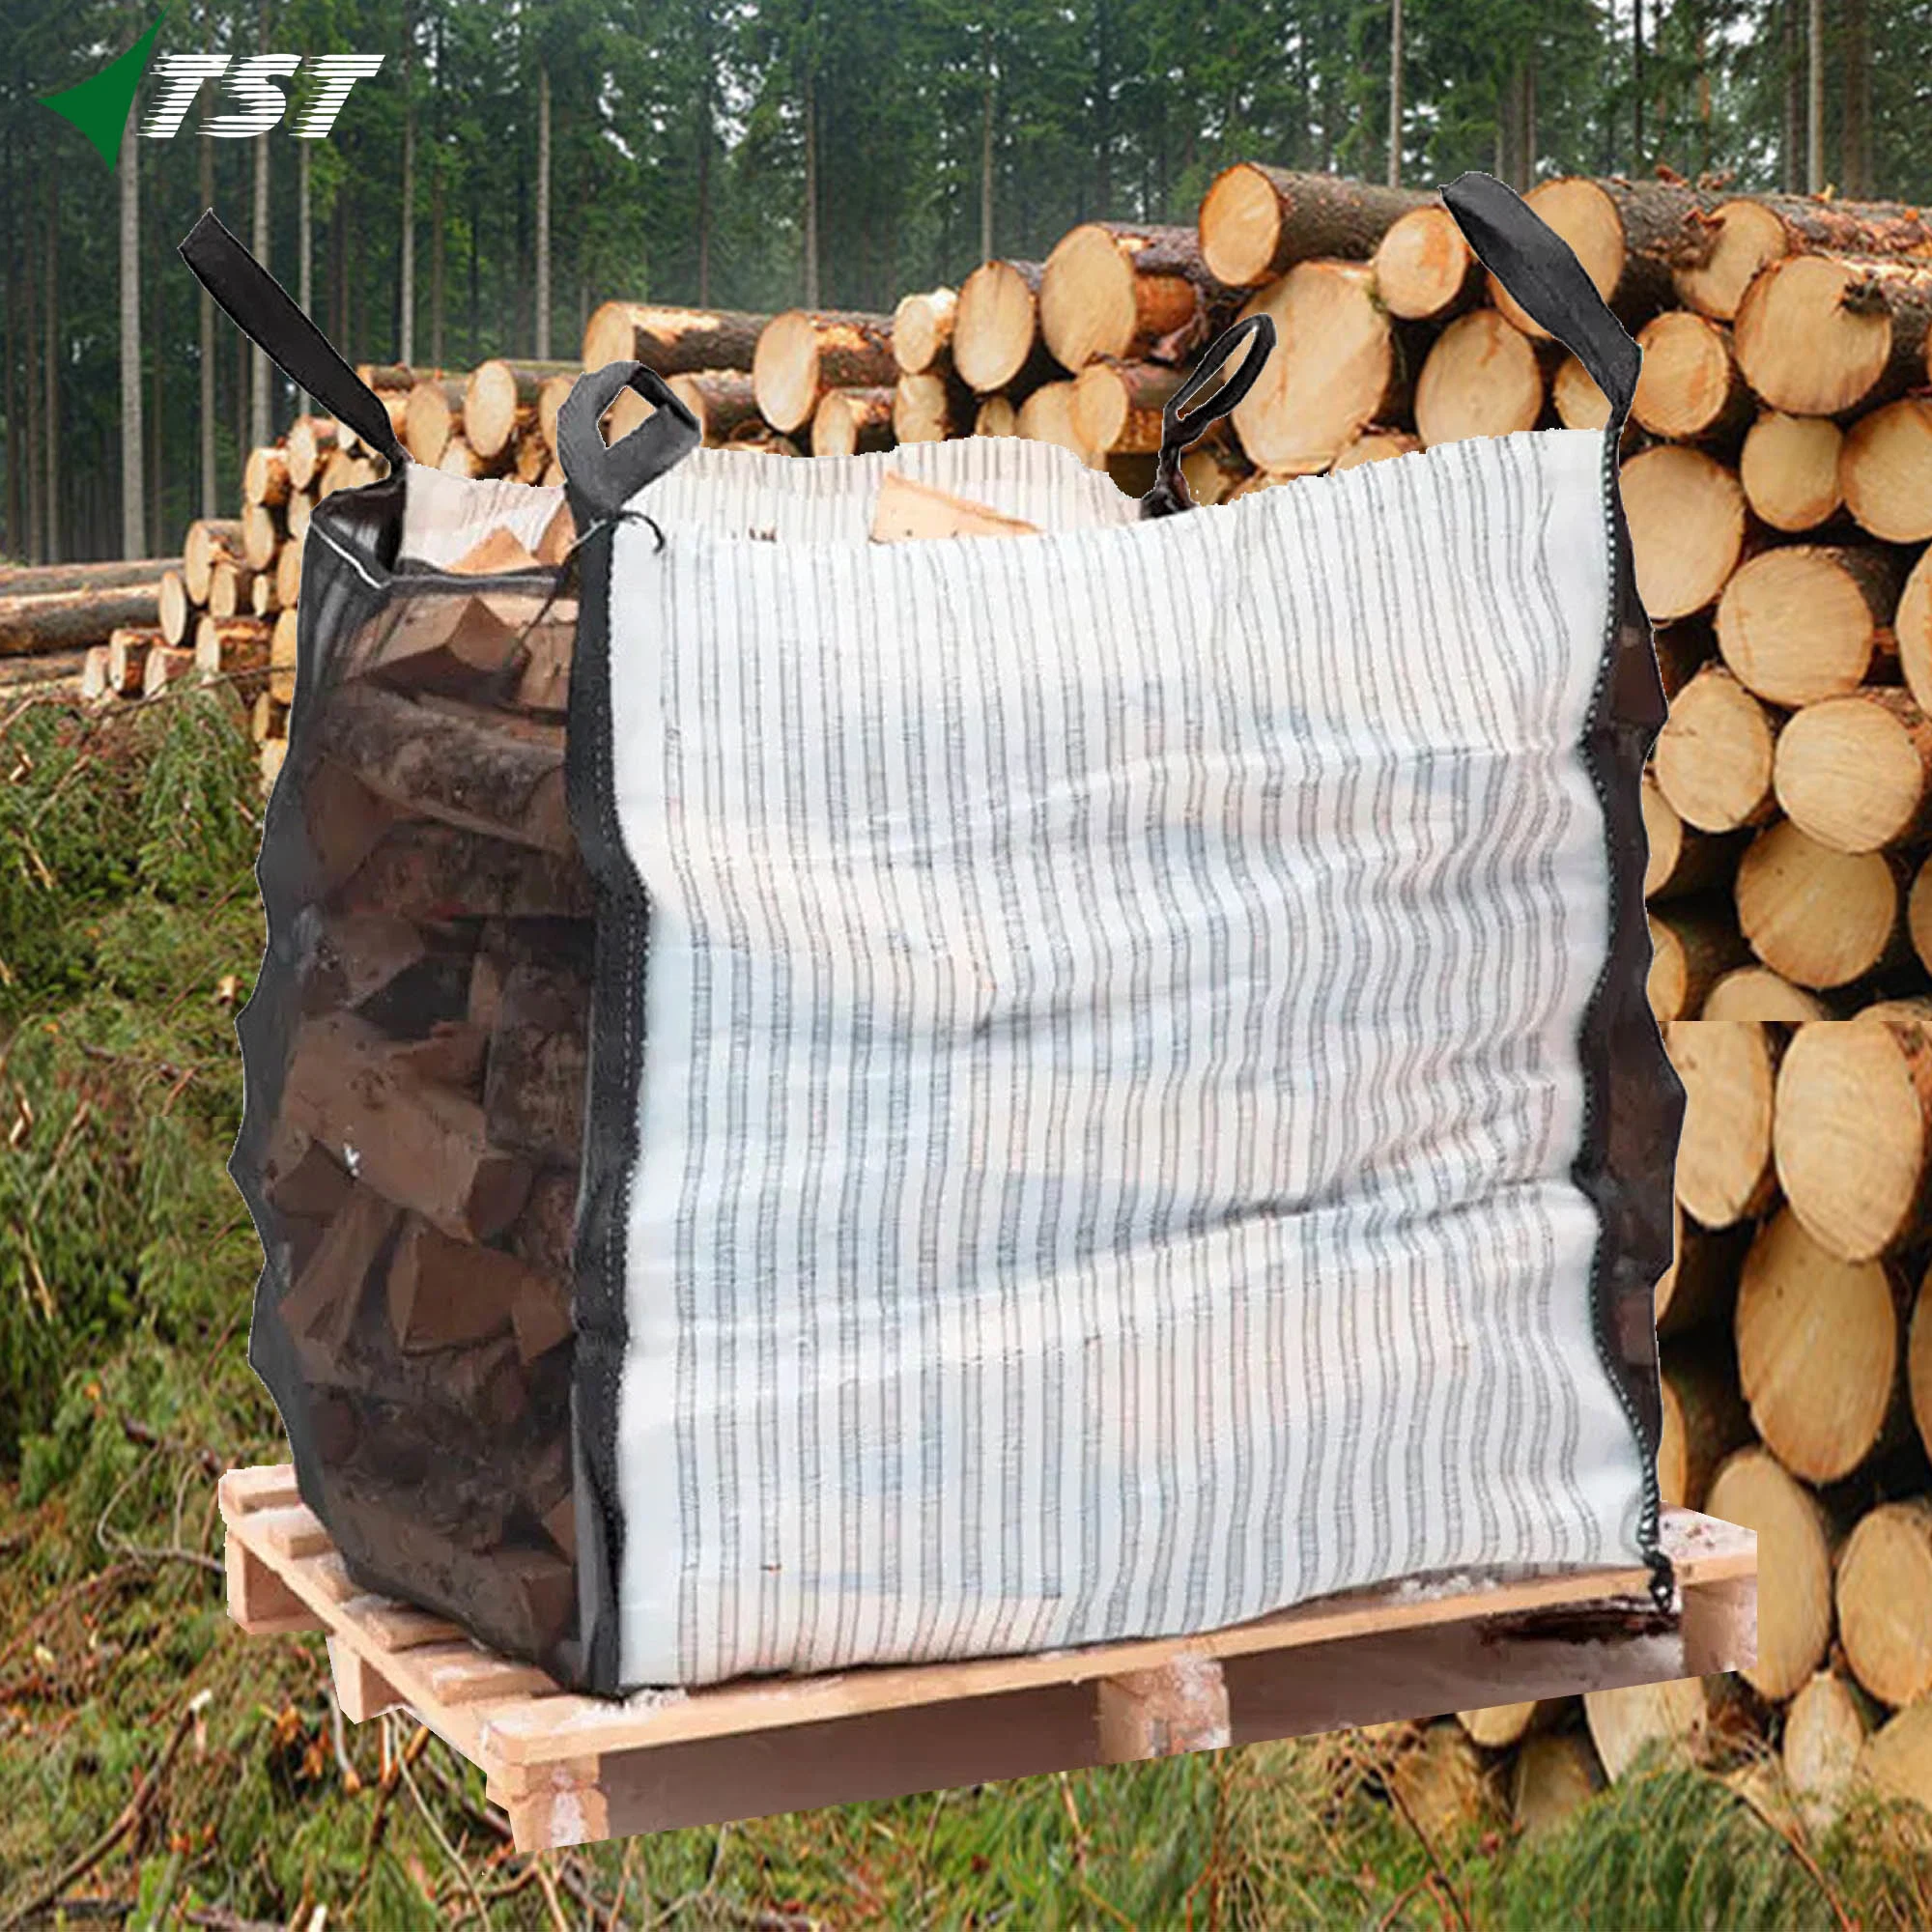 PP Woven Tubular Mesh Net Bag for Firewood Vegetable Packing